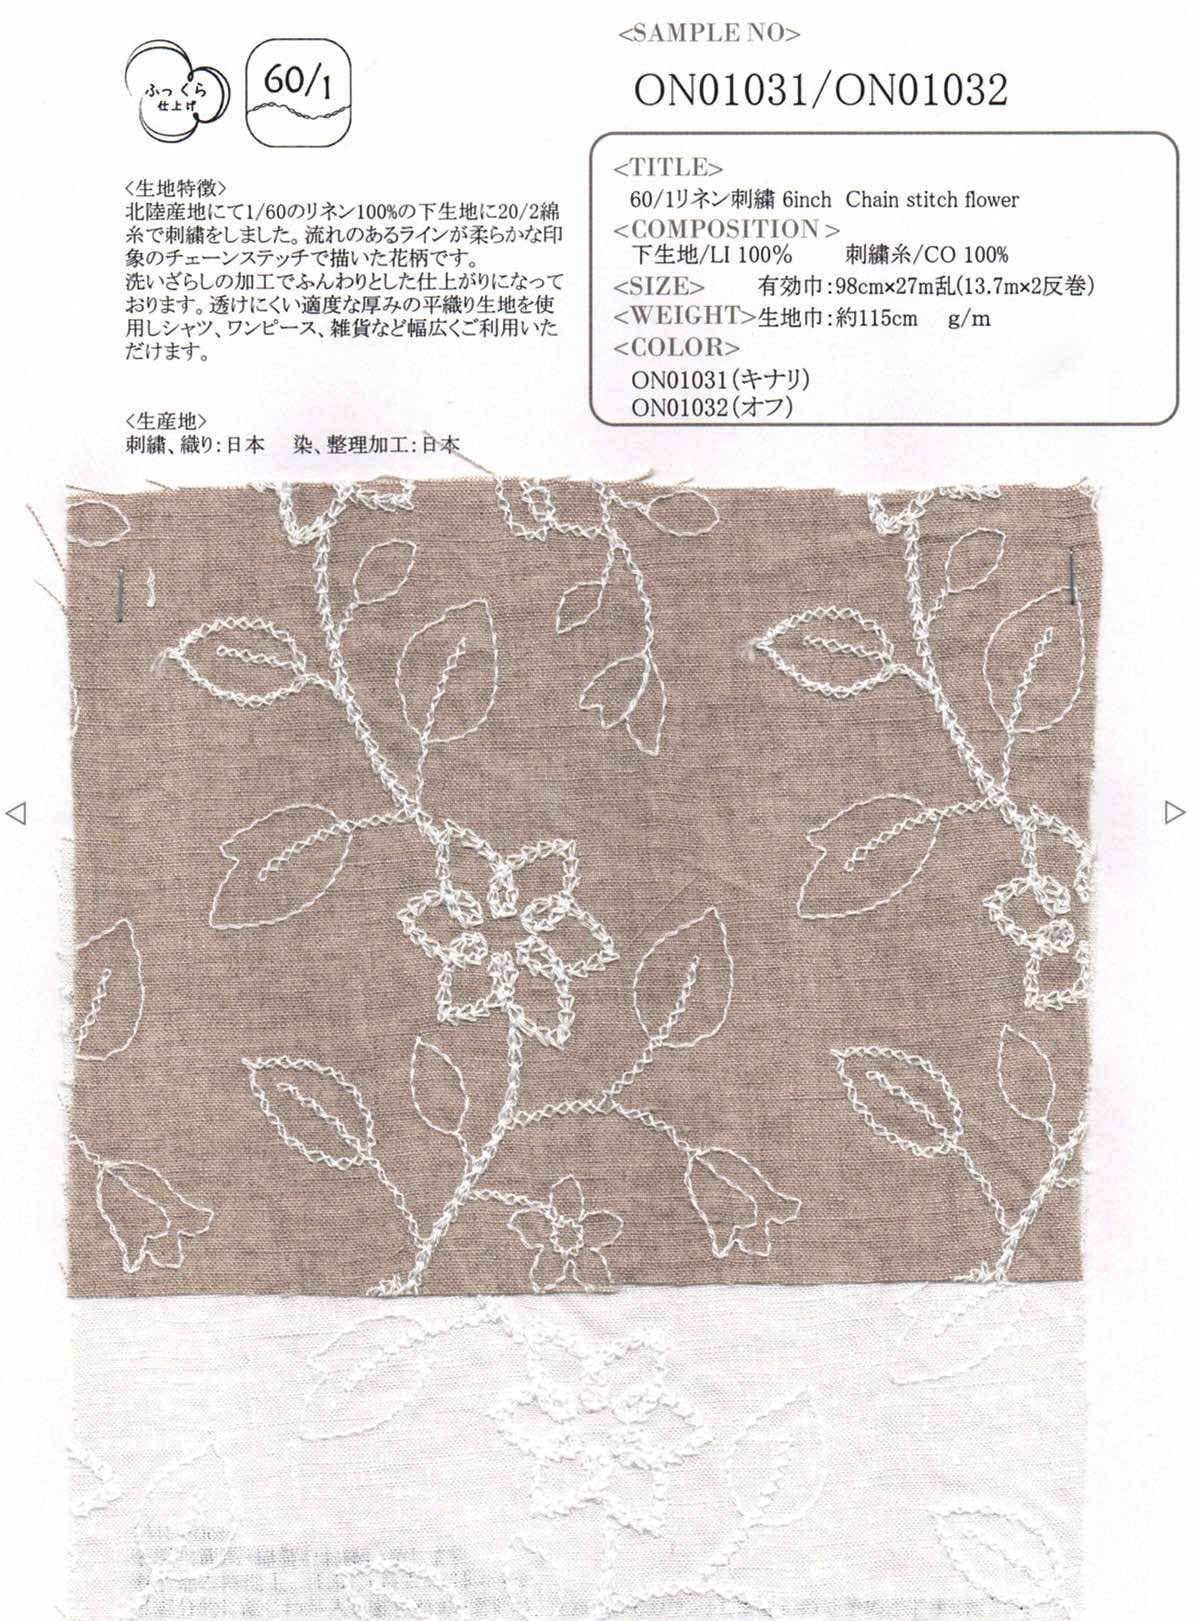 60/1リネン刺繍 6inch Chain stitch flower（オフ）【ご注文は1反からの受付になります※納期約60日】